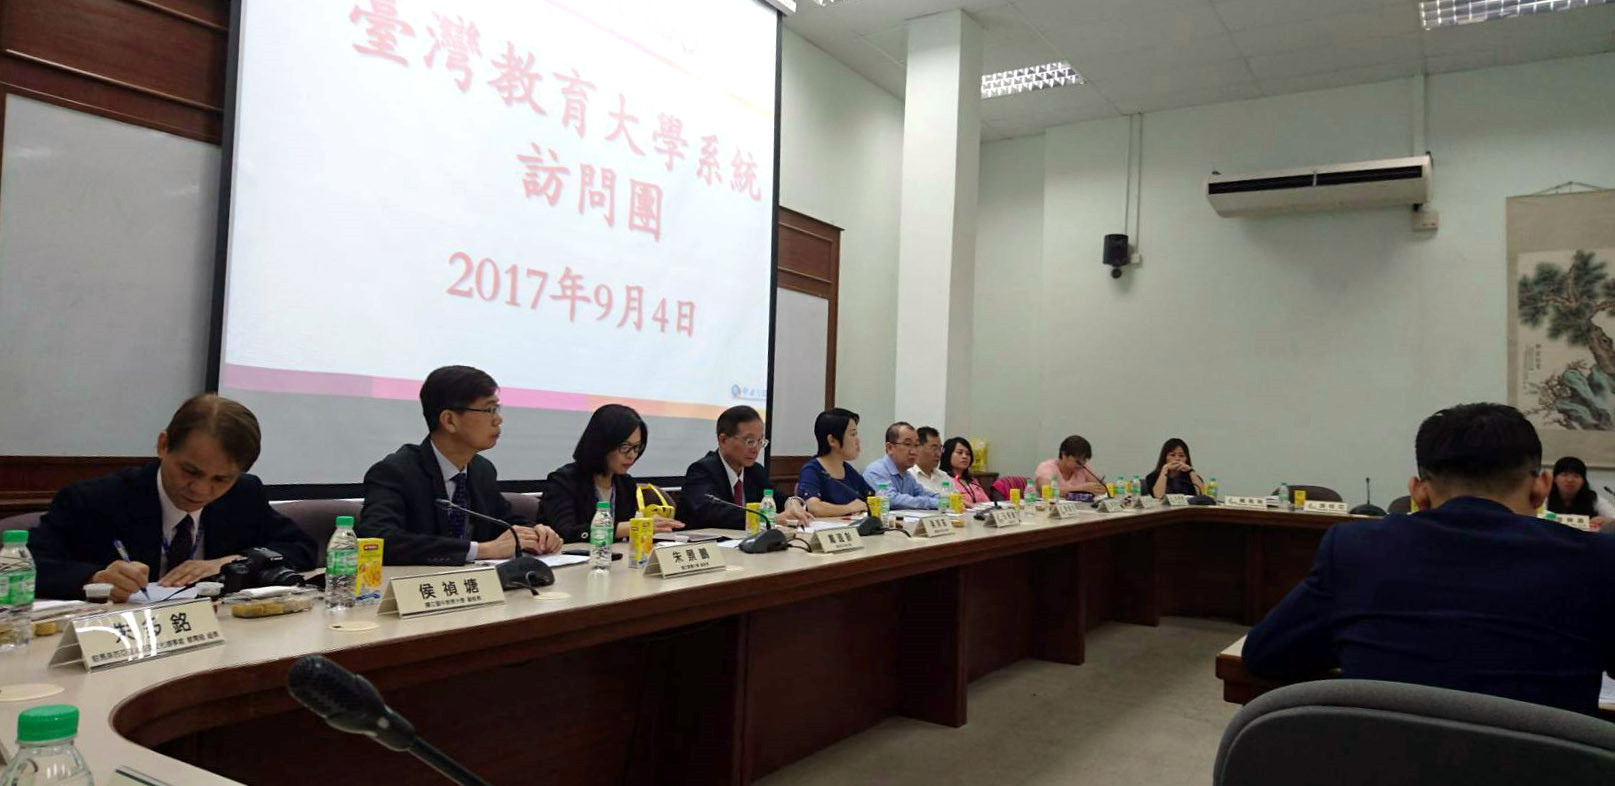 馬來西亞華校董事會總會歡迎臺灣教育大學系統代表團到訪